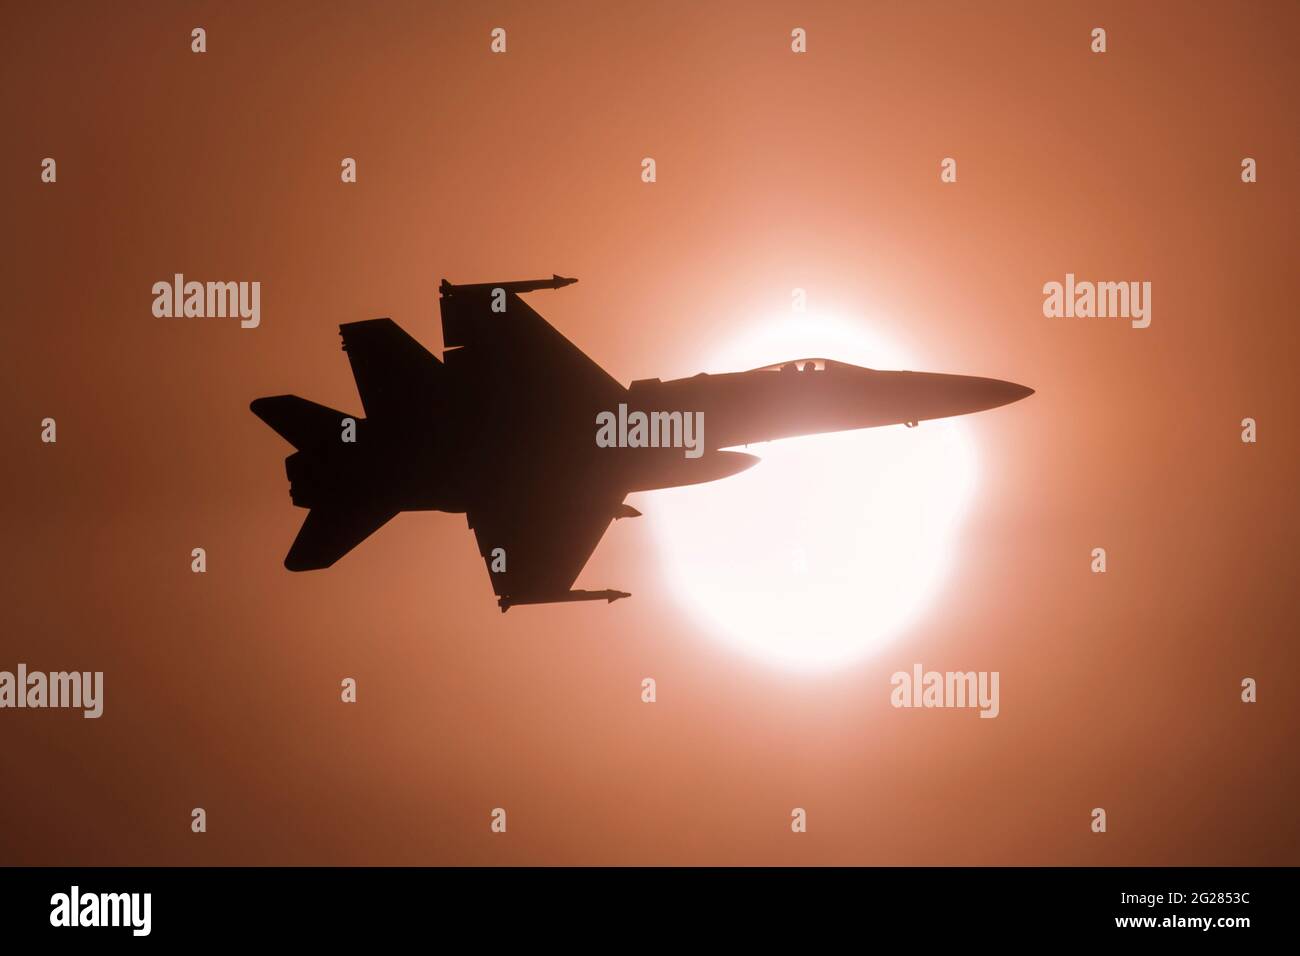 Der F-18C-Jet der finnischen Luftstreitkräfte fliegt an der hellen Sonne vorbei. Stockfoto